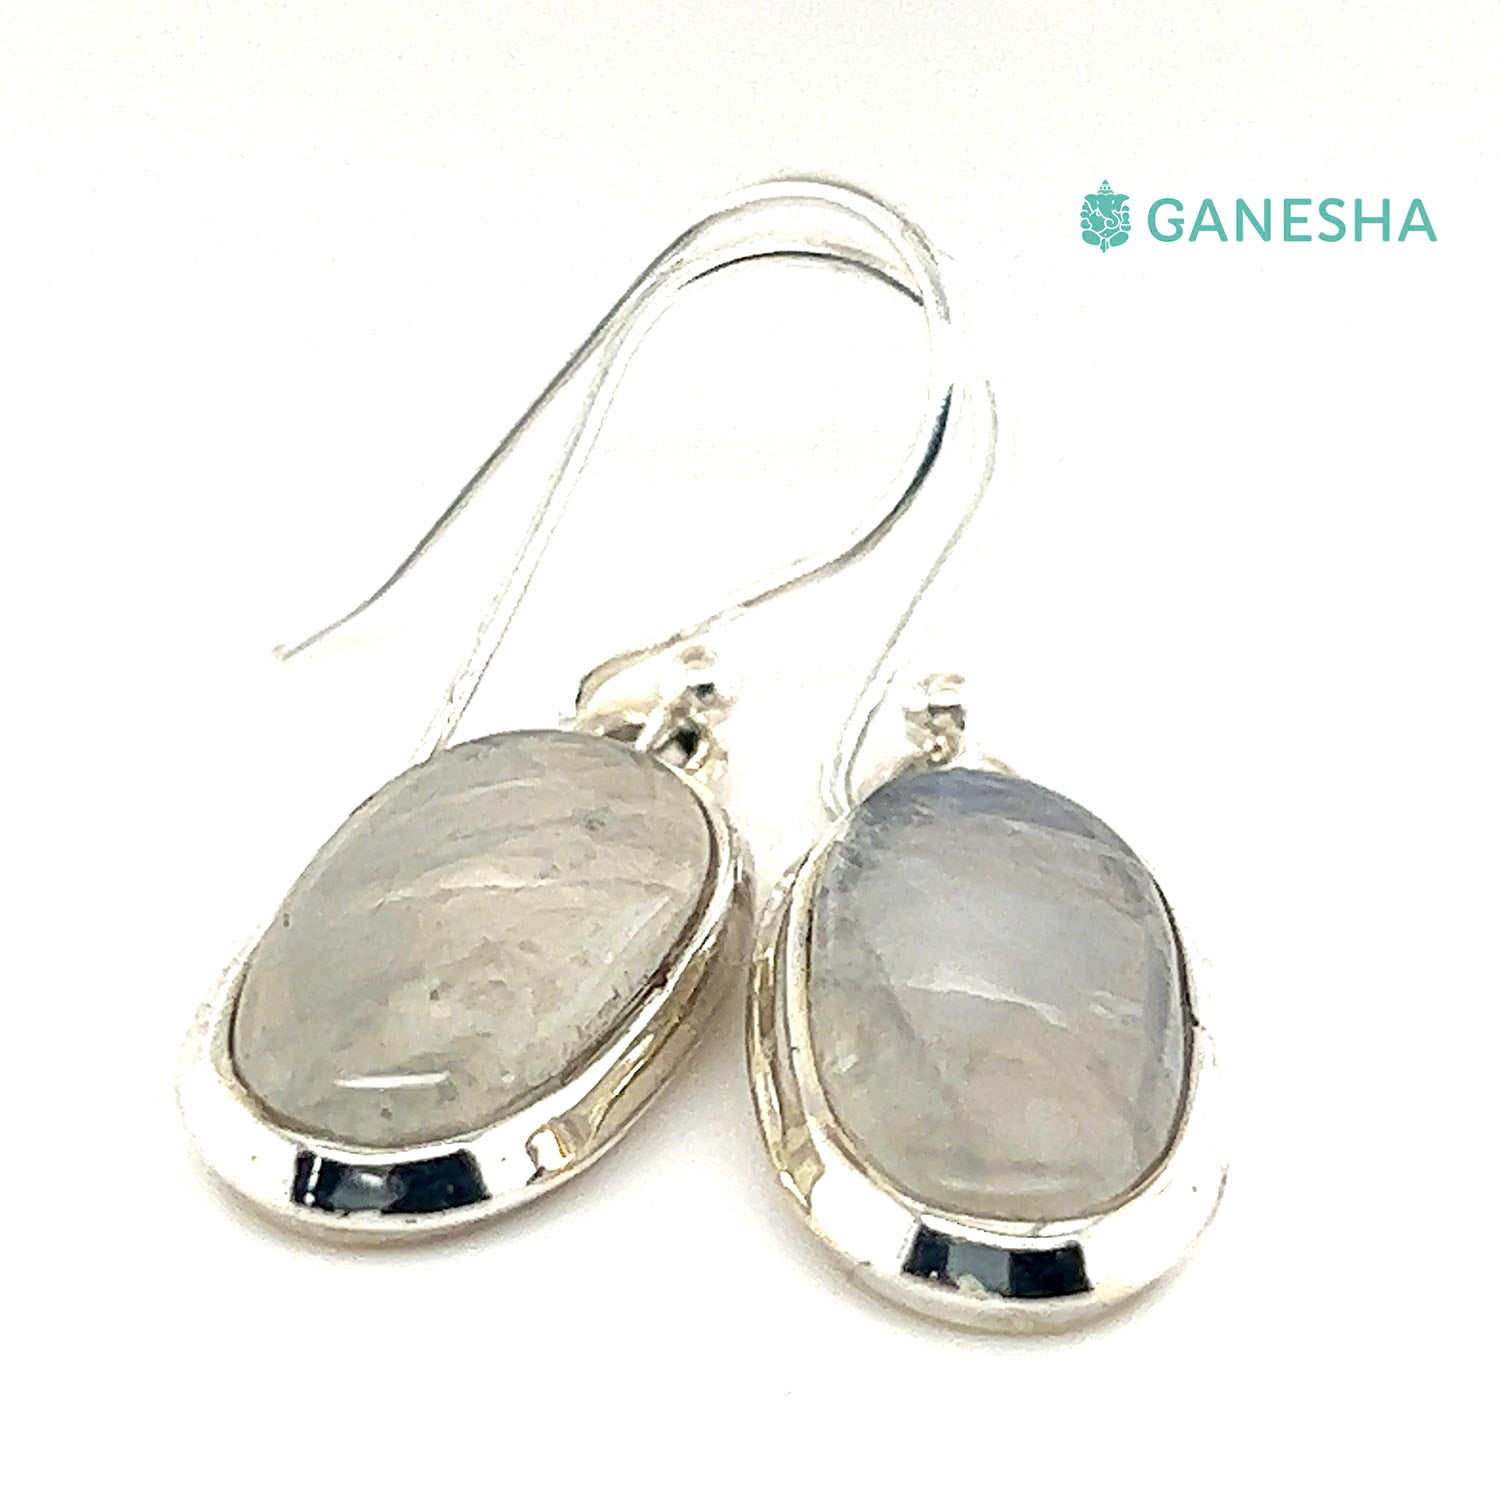 Ganesha Handicrafts, Moonstone Double-Drop Earrings - Sterling Silver (925), Moonstone Double-Drop Silver Earrings, 925 Double Drop Silver Earrings, Women's Trending Earring, Womens Stylized Earrings.  